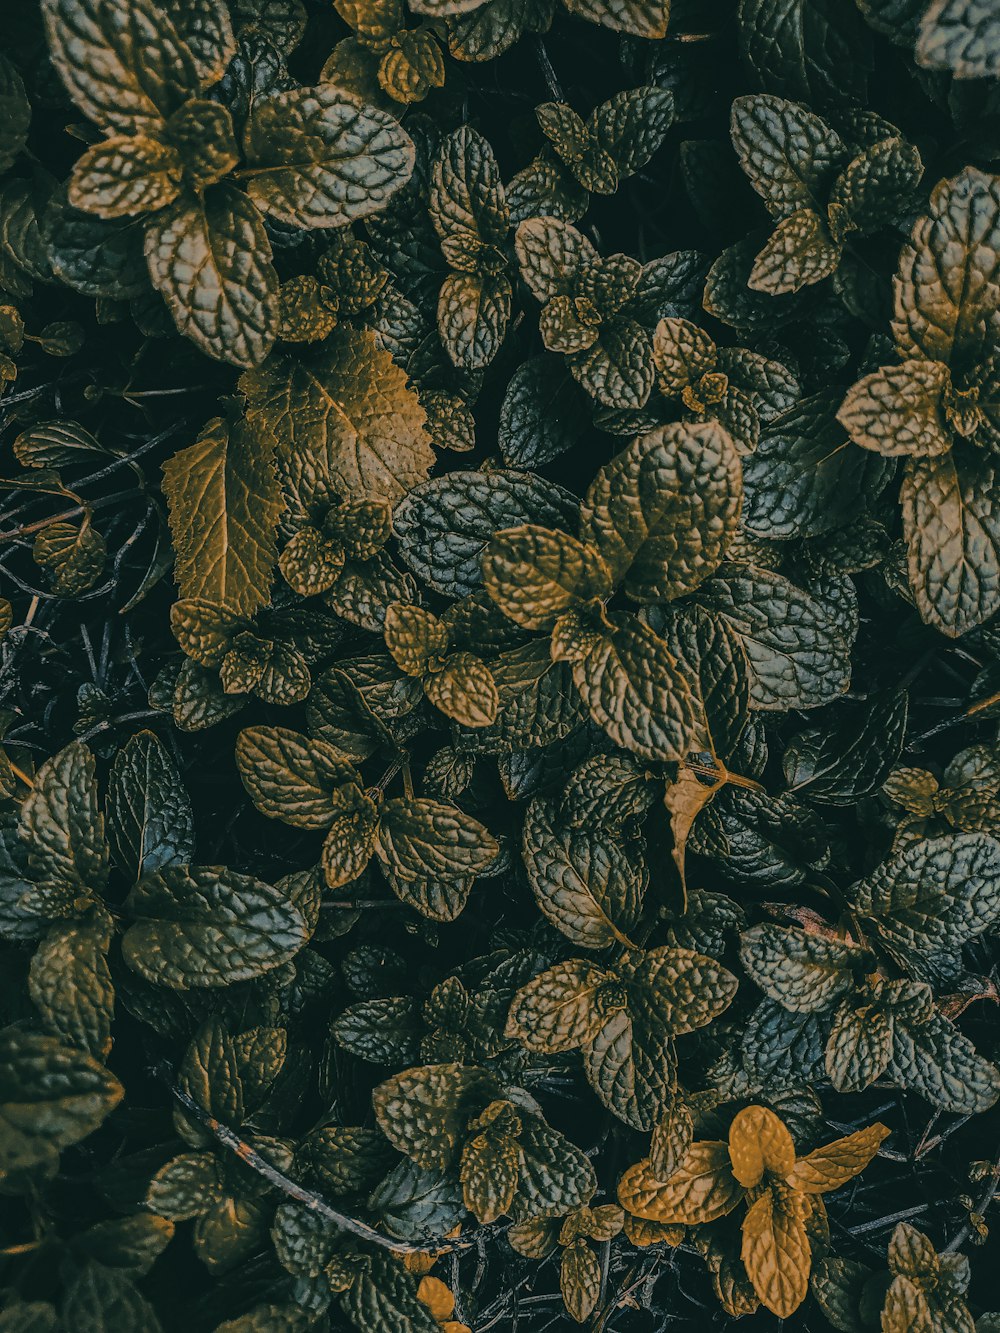 Photographie sélective de la plante à feuilles vertes